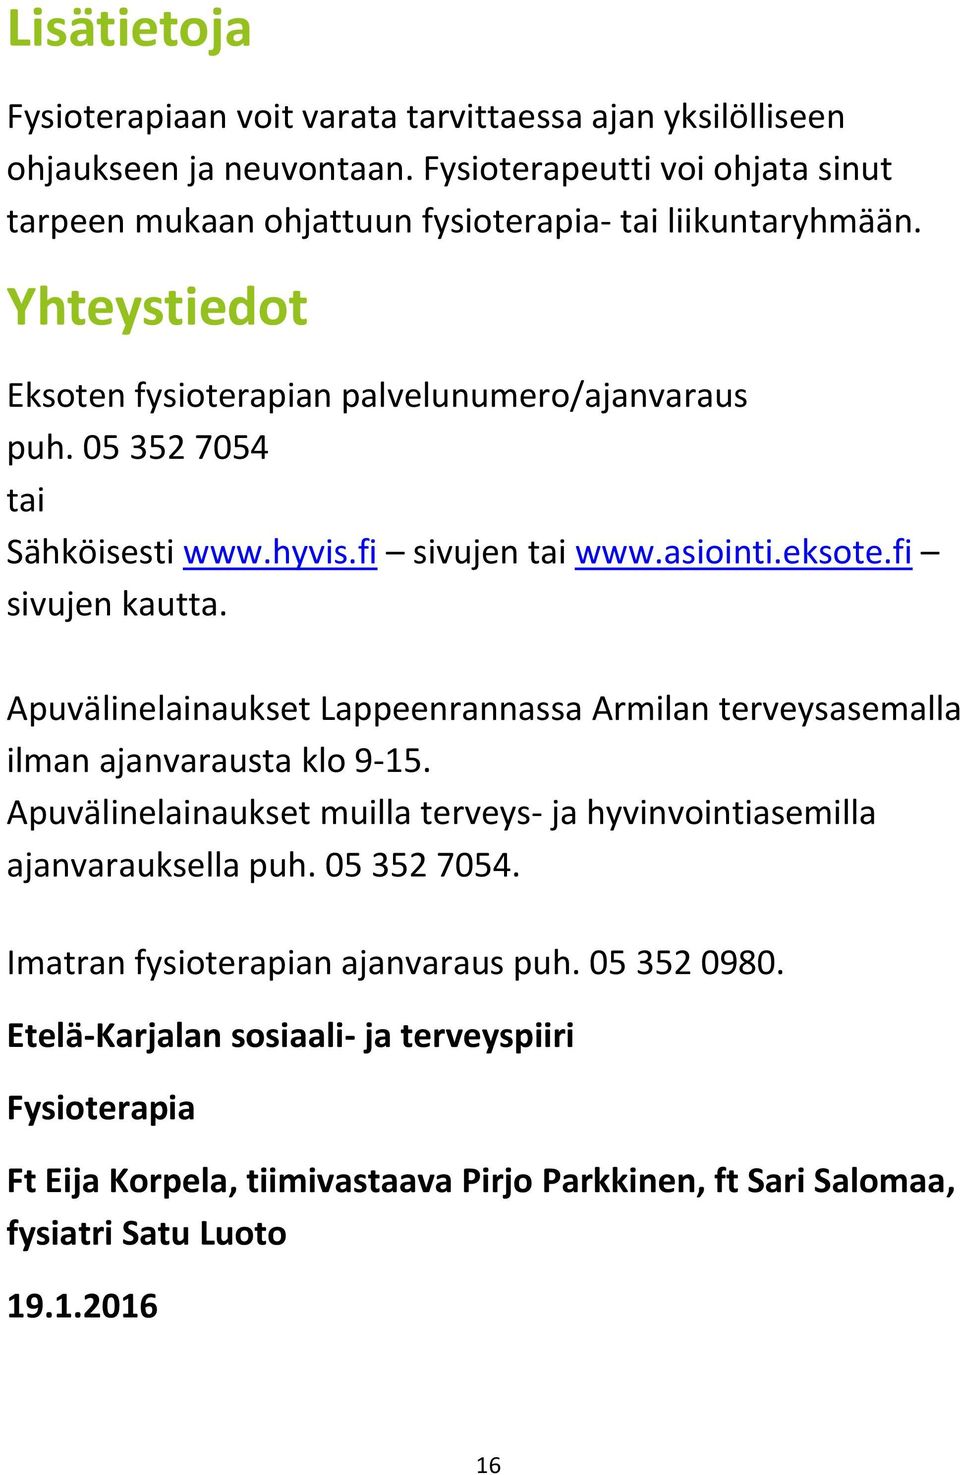 05 352 7054 tai Sähköisesti www.hyvis.fi sivujen tai www.asiointi.eksote.fi sivujen kautta. Apuvälinelainaukset Lappeenrannassa Armilan terveysasemalla ilman ajanvarausta klo 9-15.